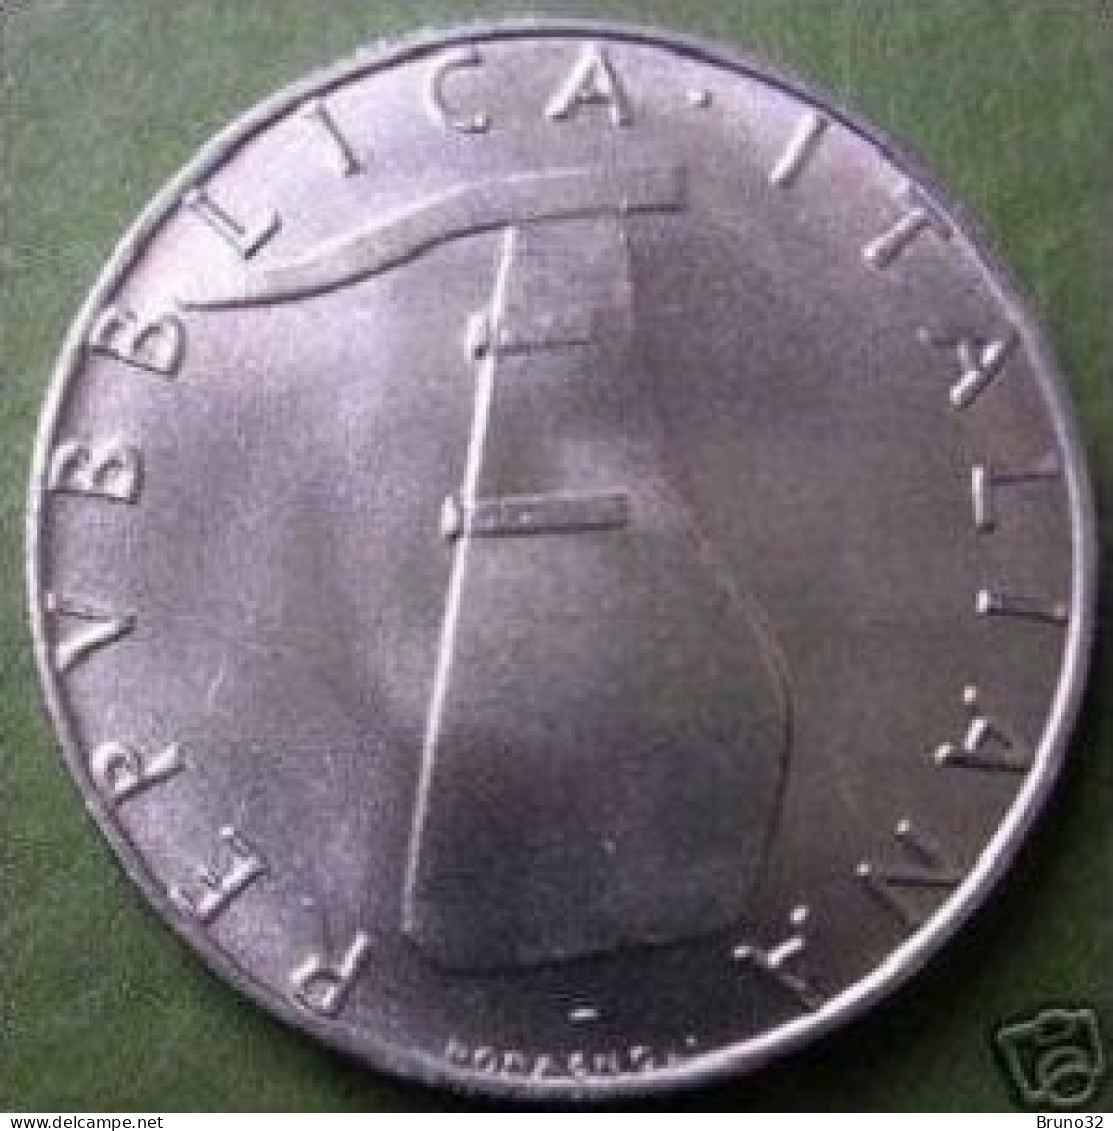 ITALIA - Lire 5 1969 - FDC/Unc Da Rotolino/from Roll 1 Moneta/1 Coin - 5 Lire